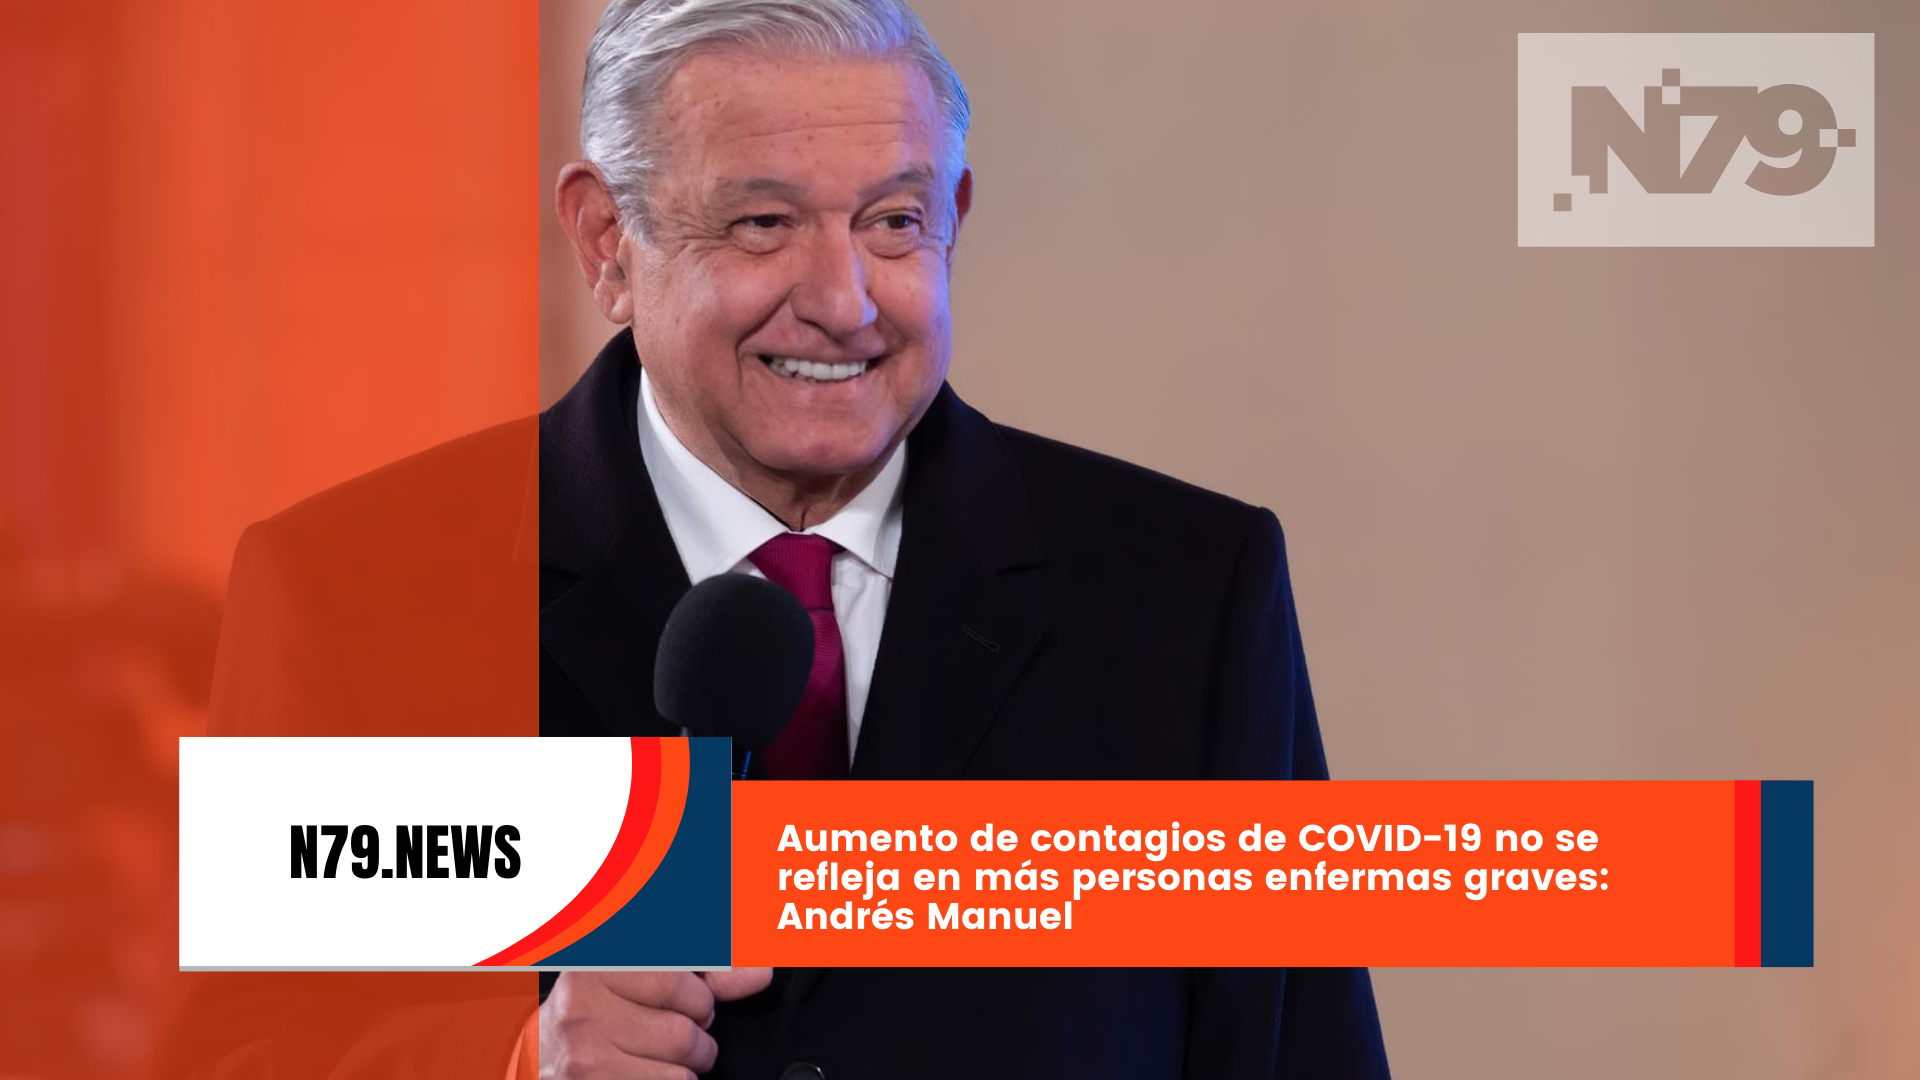 Aumento de contagios de COVID-19 no se refleja en más personas enfermas graves Andrés Manuel